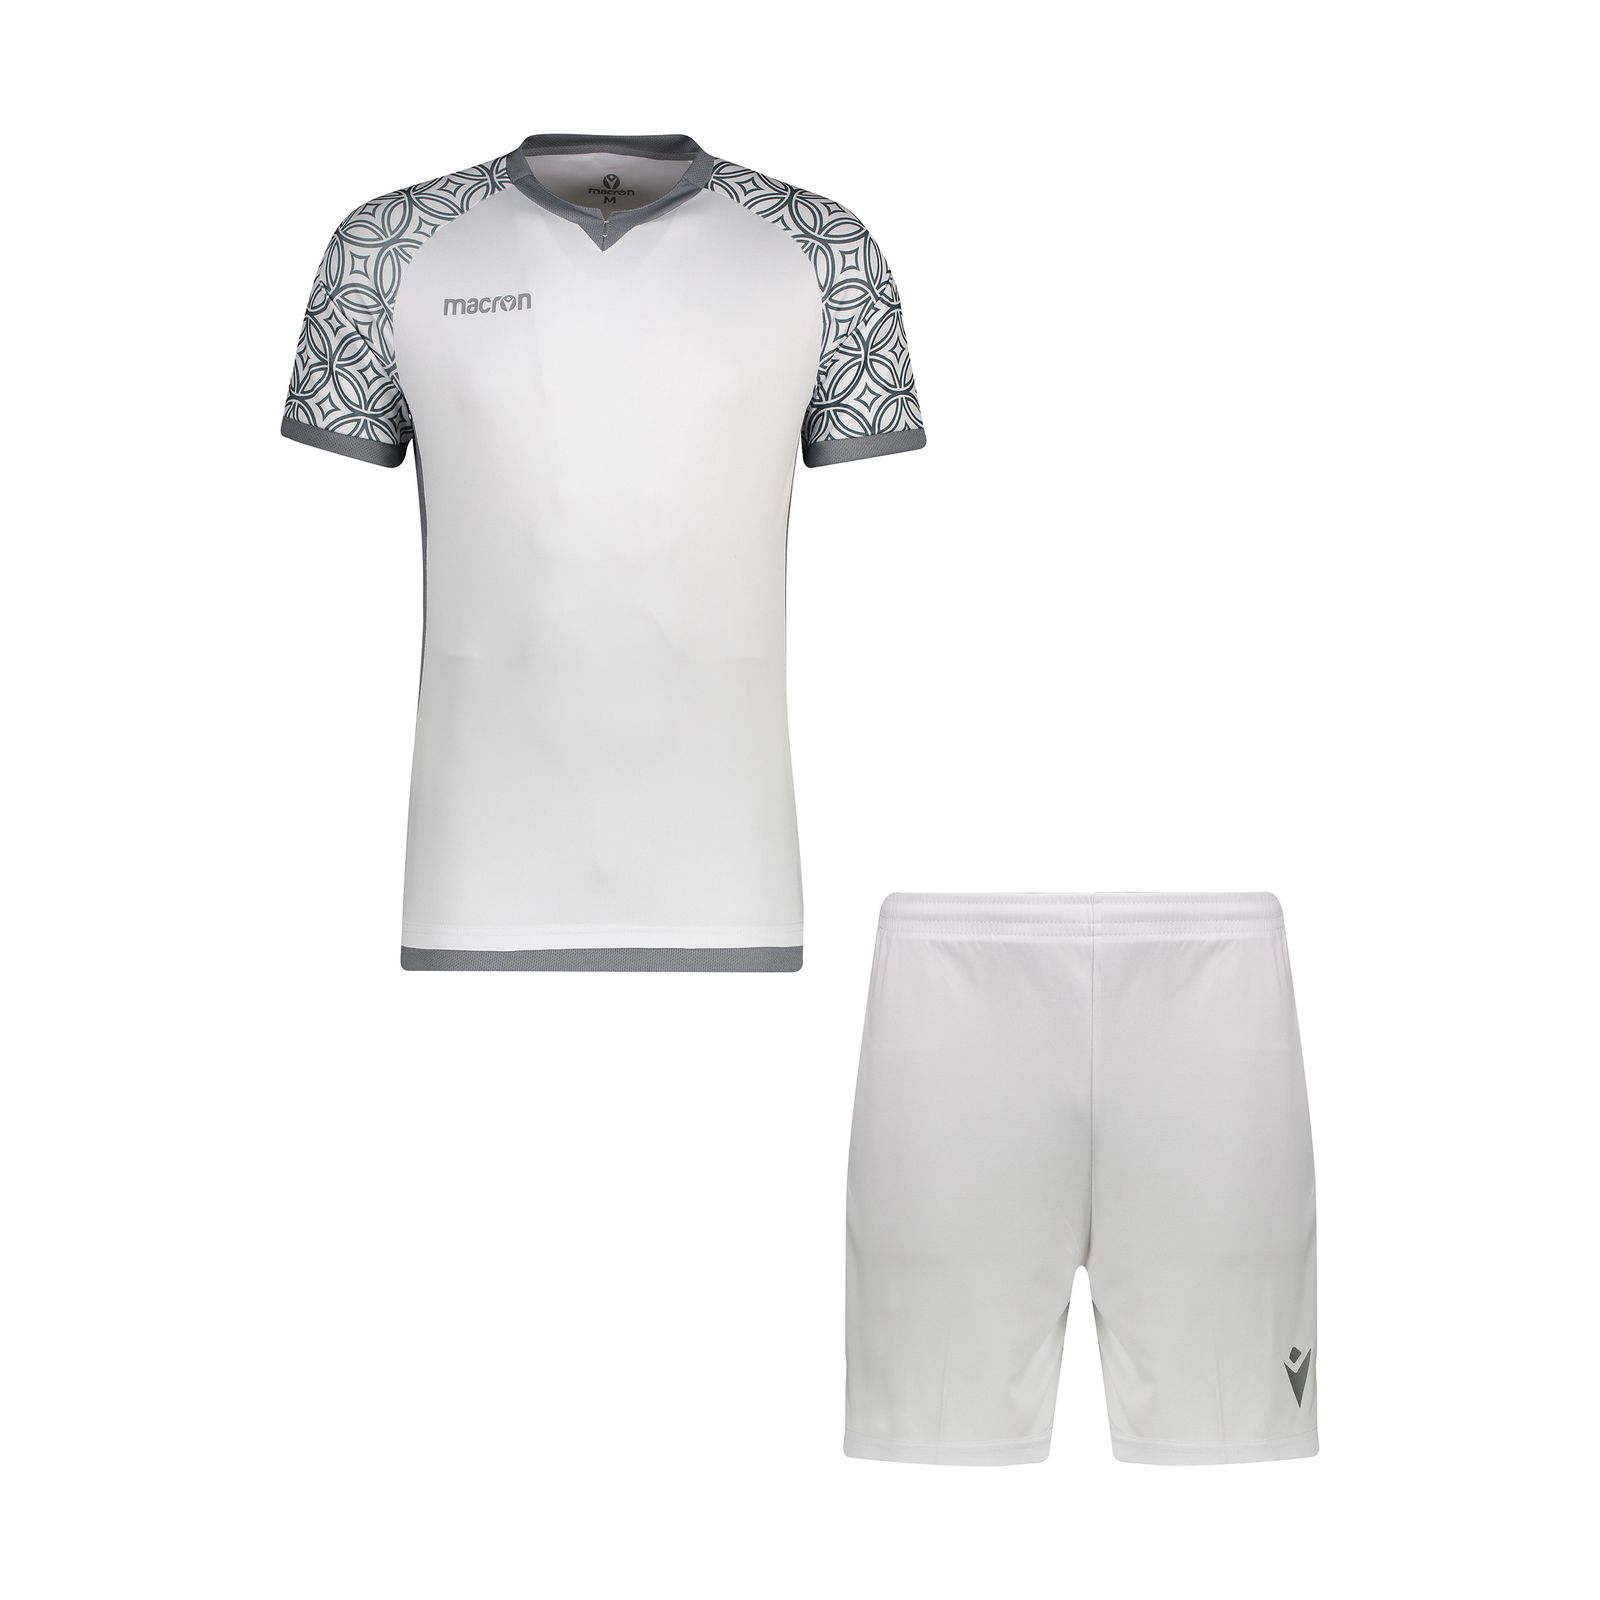 ست پیراهن و شورت ورزشی مردانه مکرون مدل آرمنیا رنگ سفید -  - 1